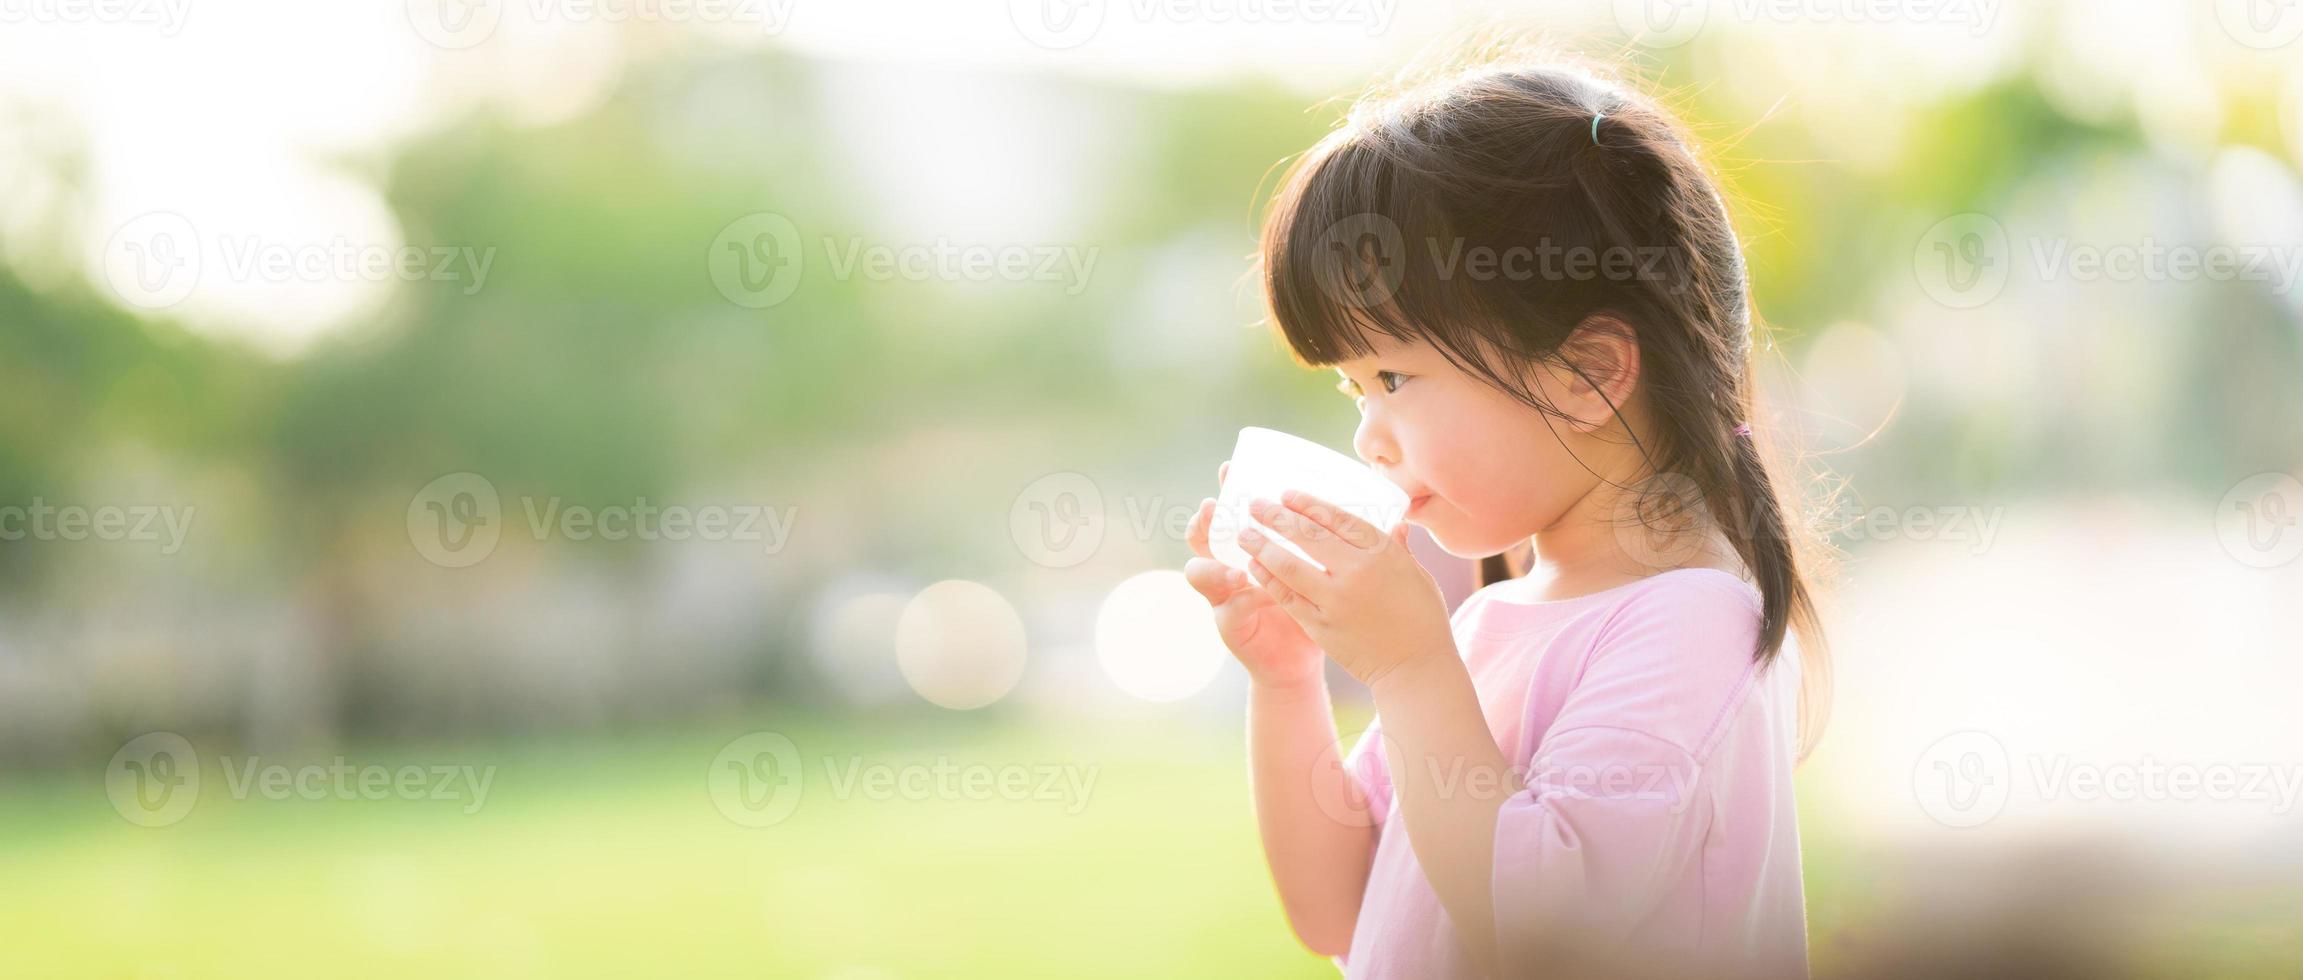 il concetto di acqua è ottimo per i bambini. bambino beve da bicchieri di plastica. sfondo naturale. durante l'estate o la primavera. il fianco di una bambina di 4 anni. foto